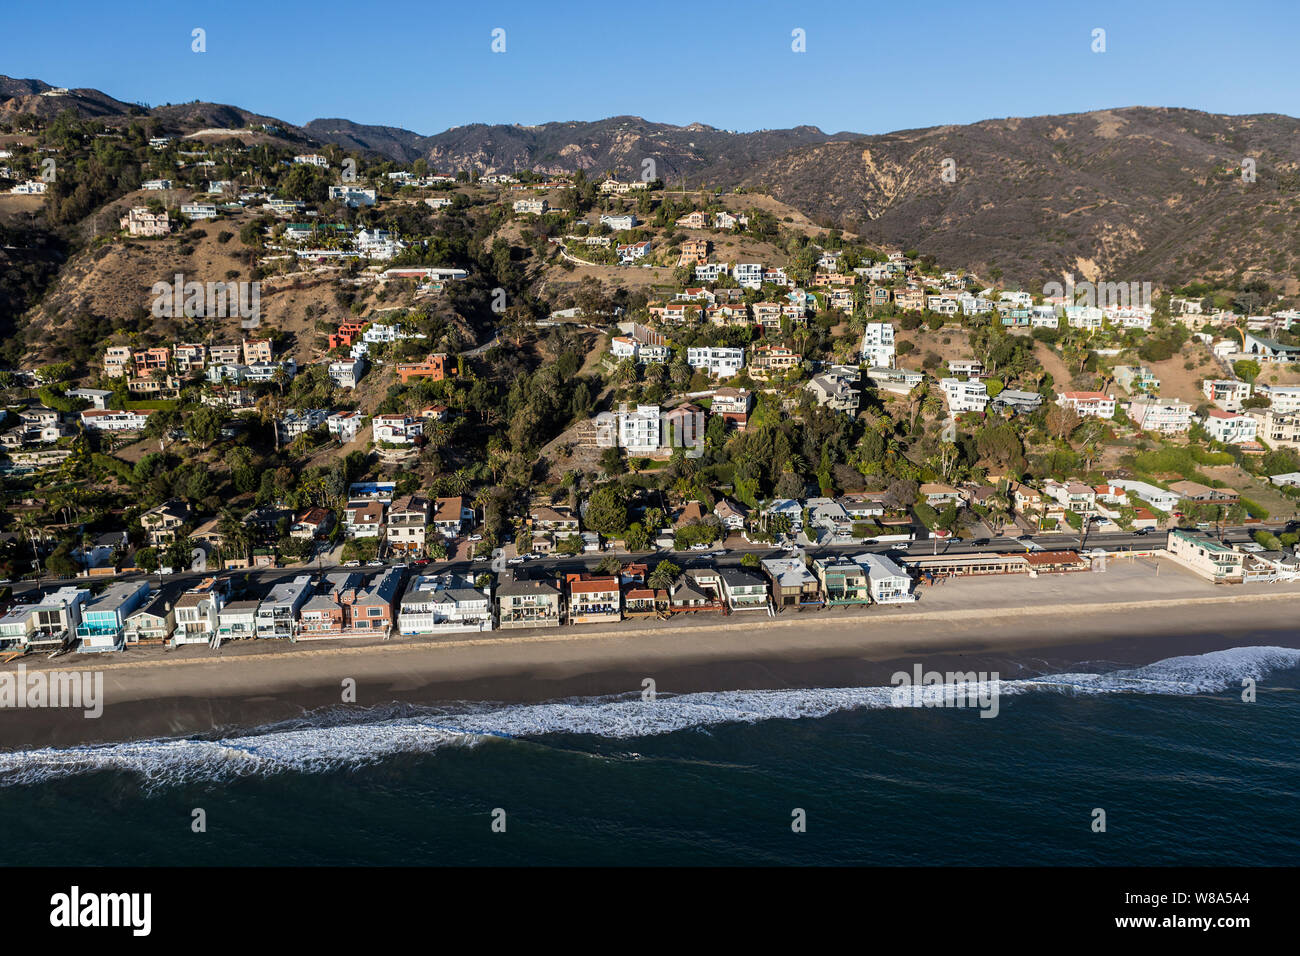 Rivage Malibu et hillside homes aerial, près de Los Angeles et Santa Monica sur autoroute de la côte pacifique dans la région pittoresque du sud de la Californie. Banque D'Images